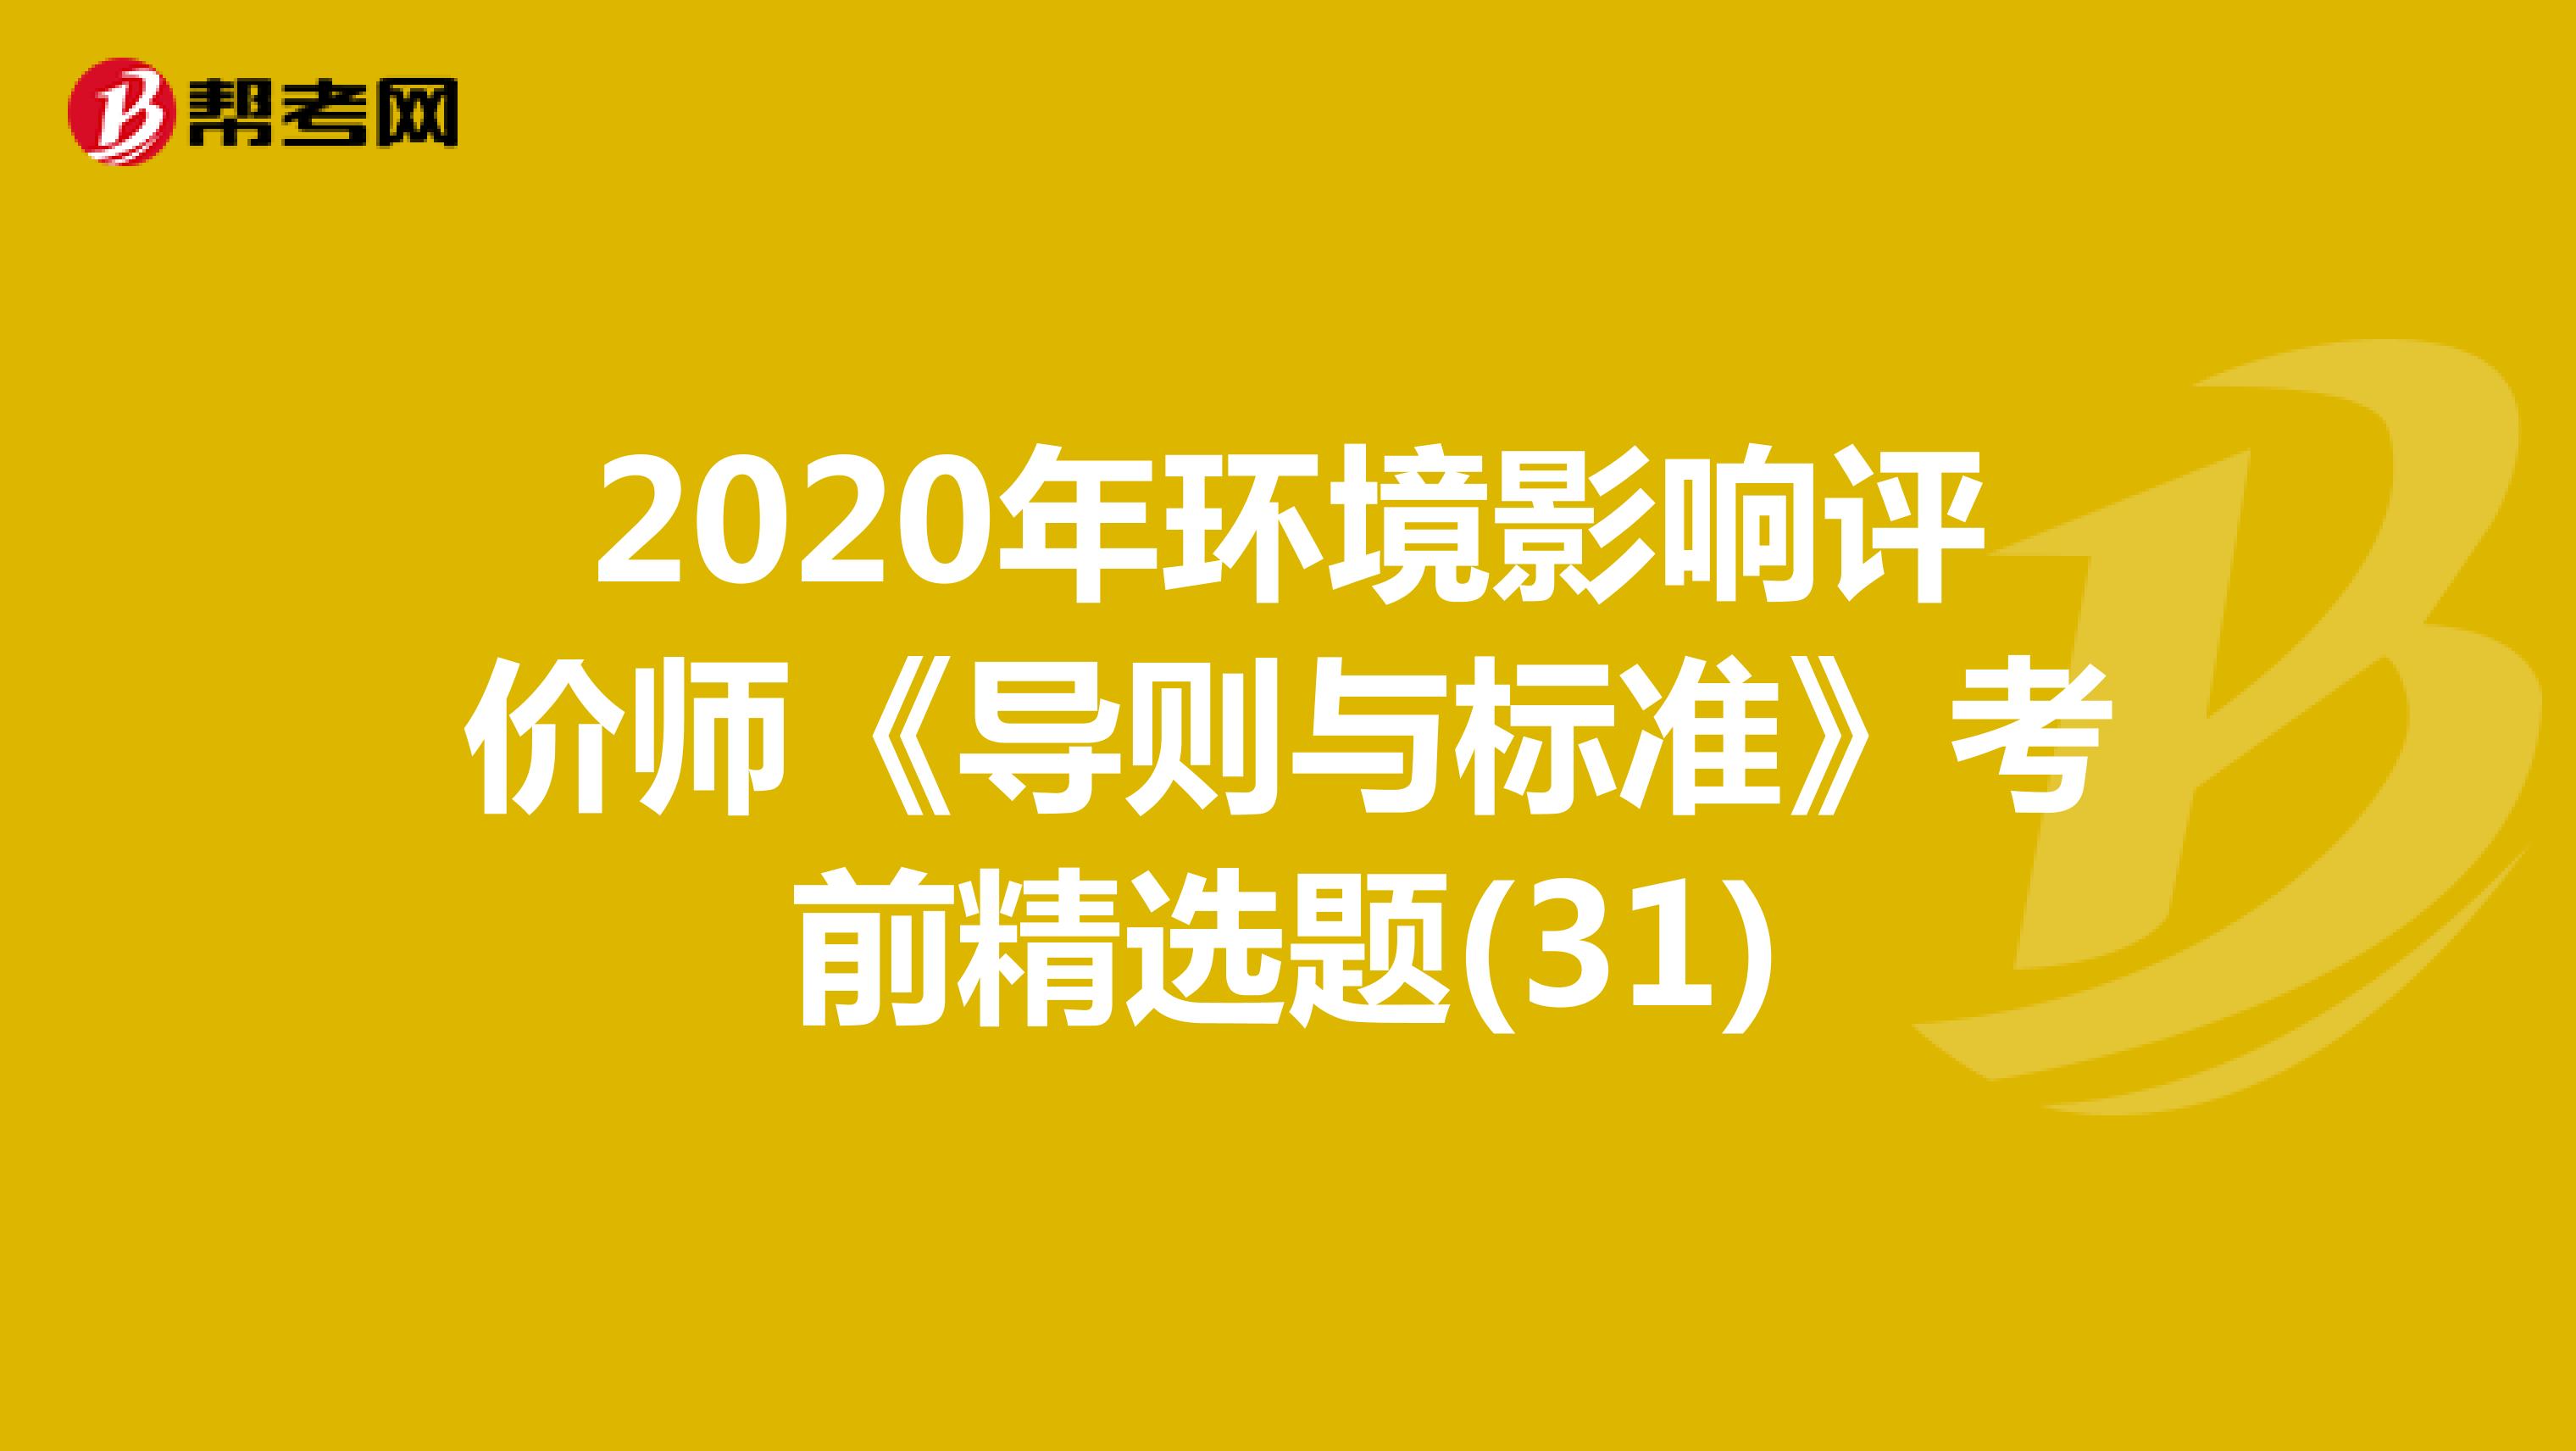 2020年环境影响评价师《导则与标准》考前精选题(31)